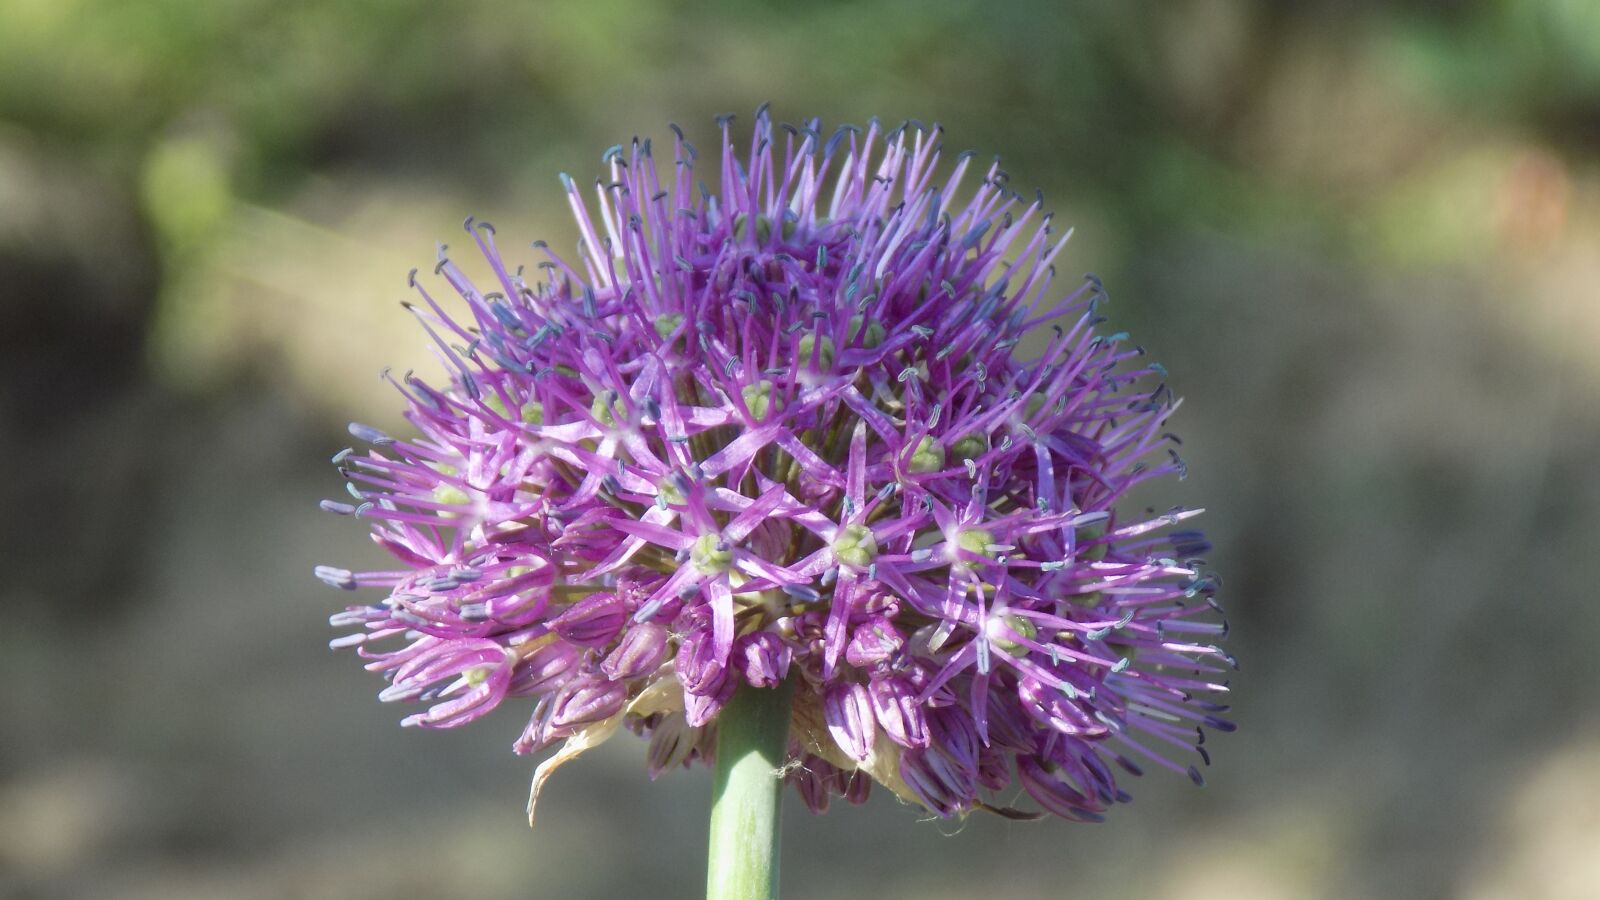 Nikon COOLPIX L330 sample photo. Flower, purple, plant photography